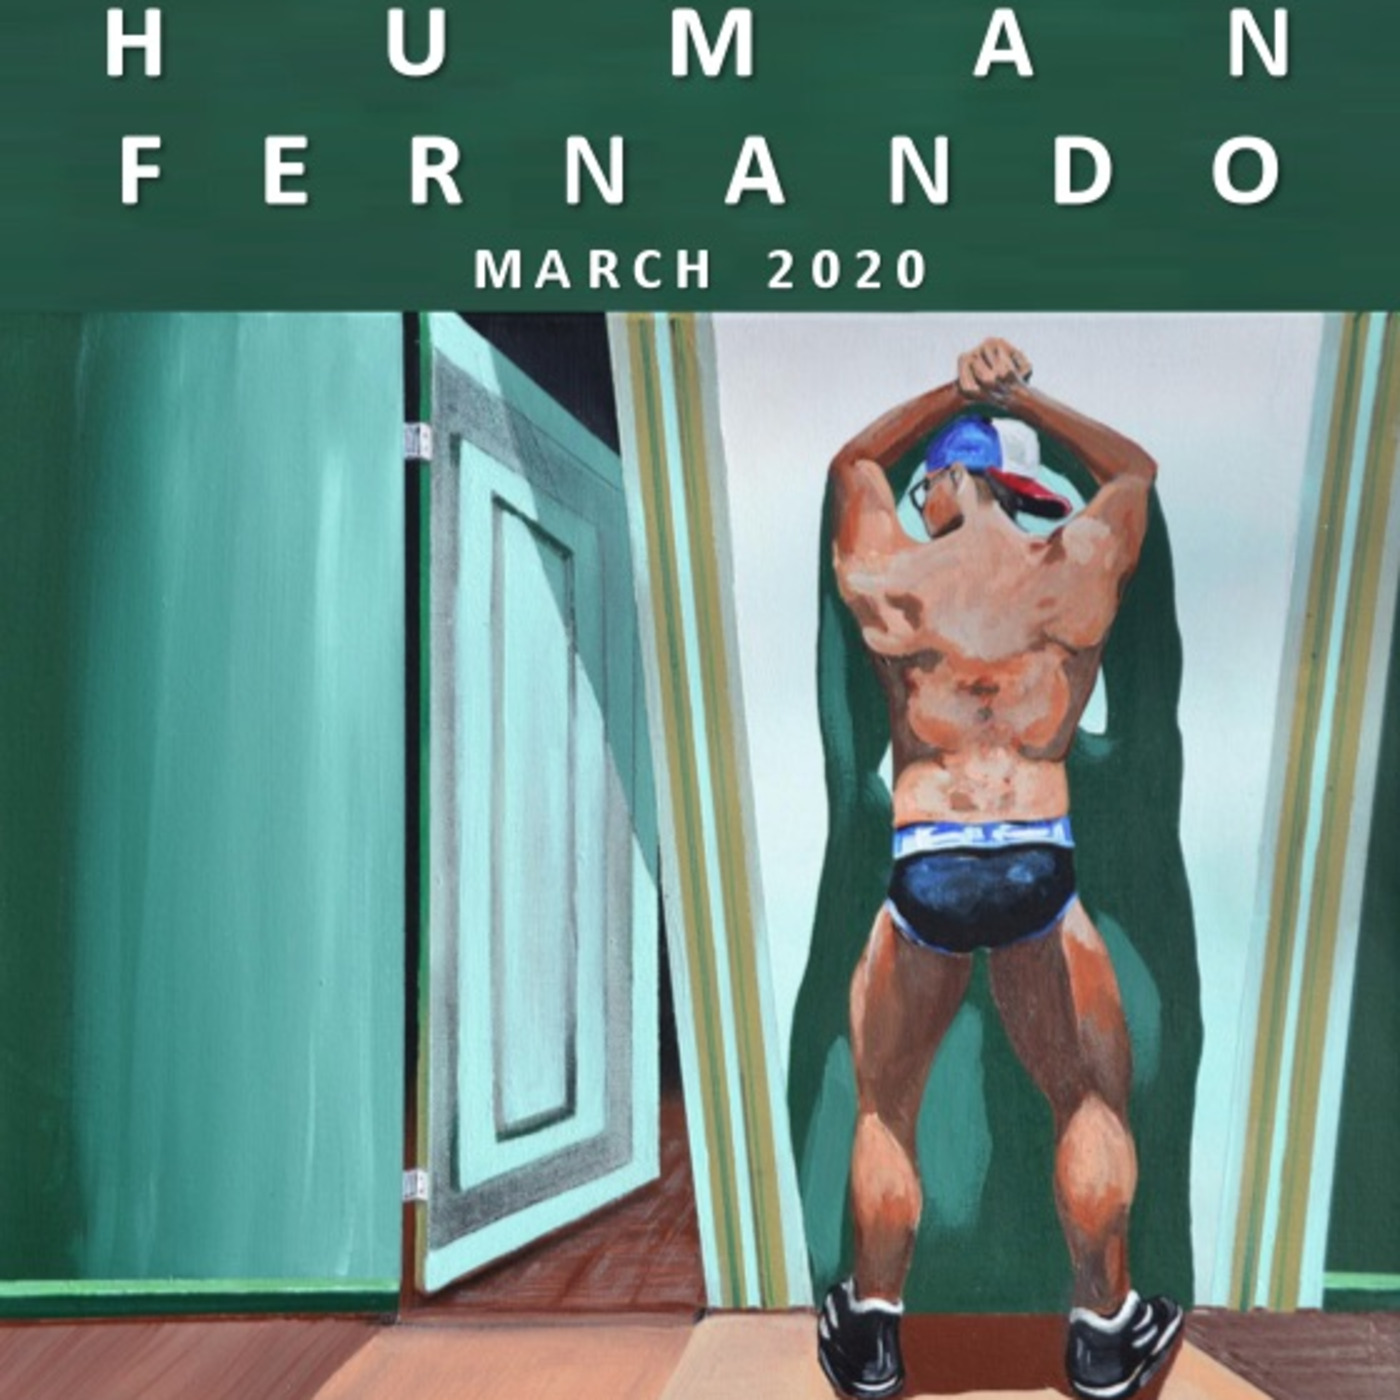 Fernando - Human - March 2020